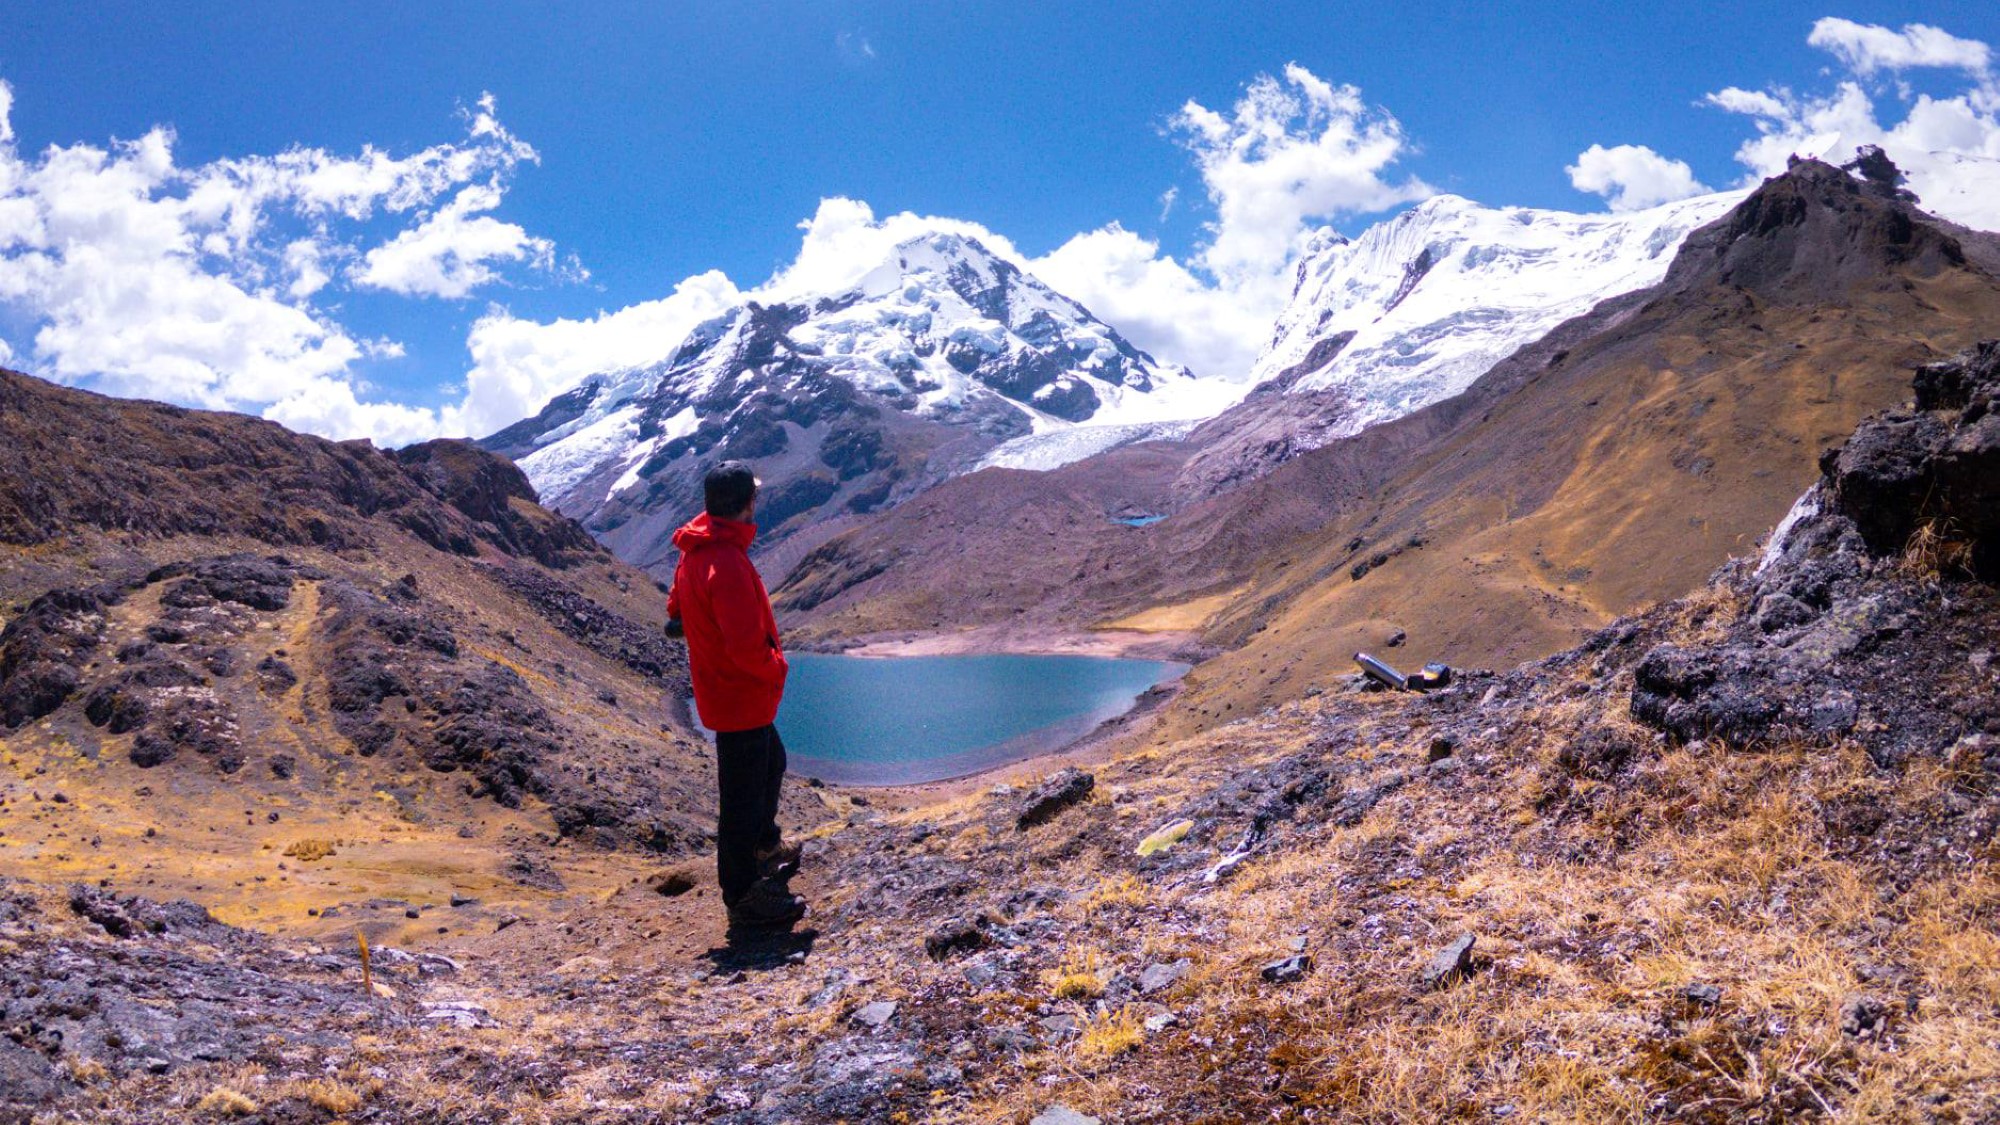 Mann i turklær ser utover liten innsjø i goldt fjellandskap i Andesfjellene